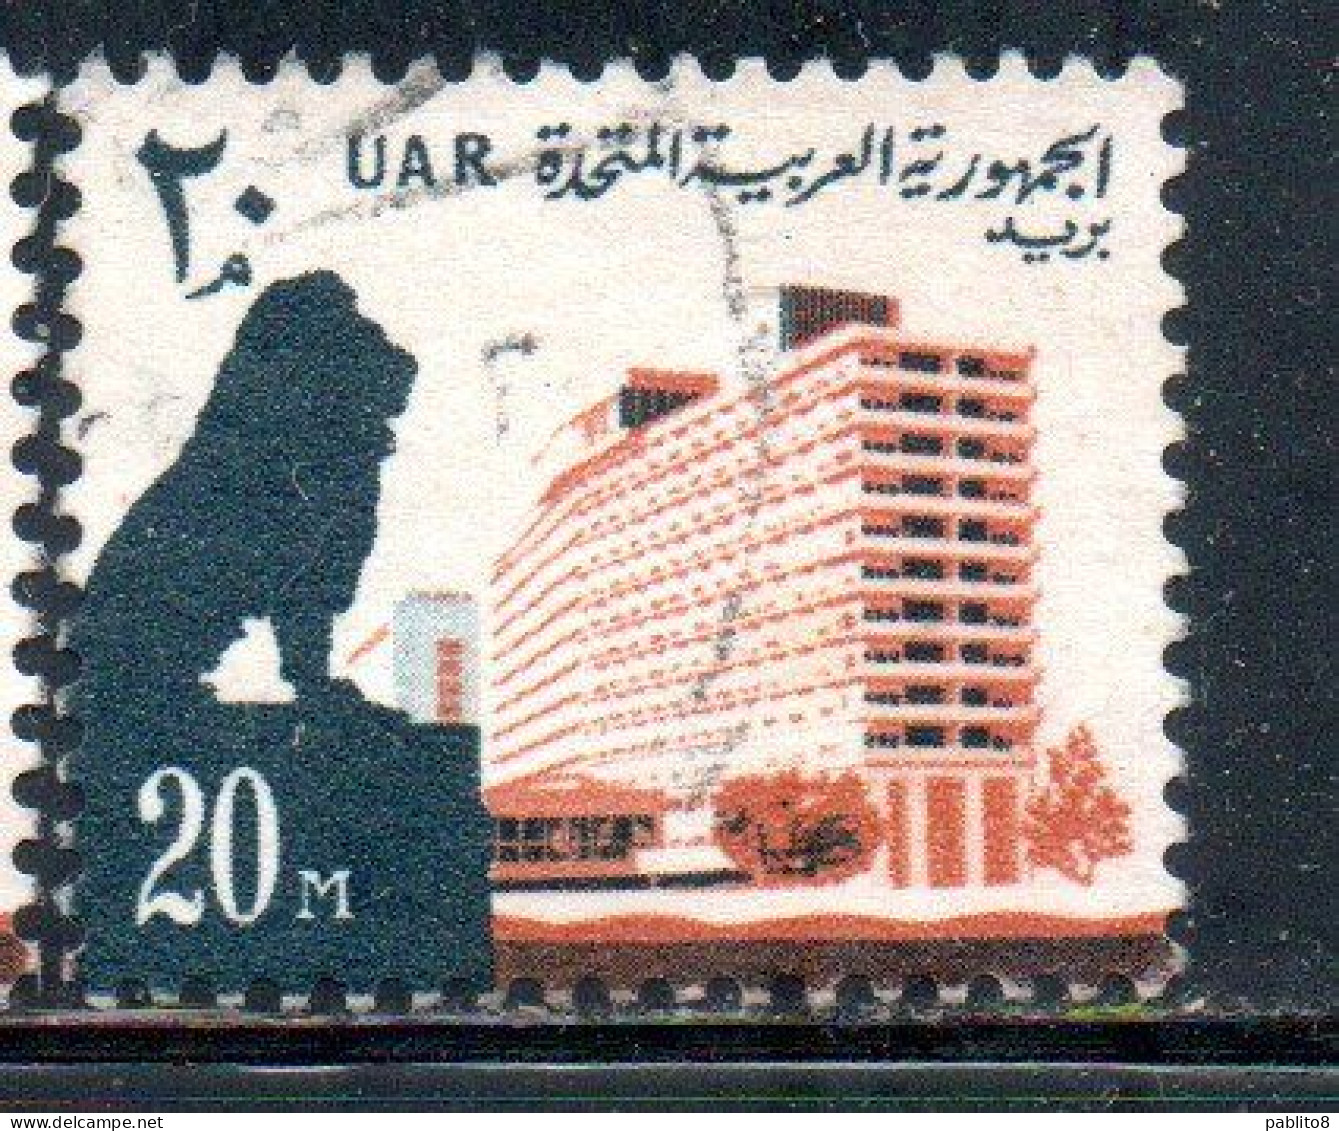 UAR EGYPT EGITTO 1964 1967 LION AND NILE HILTON HOTEL 20m USED USATO OBLITERE' - Oblitérés